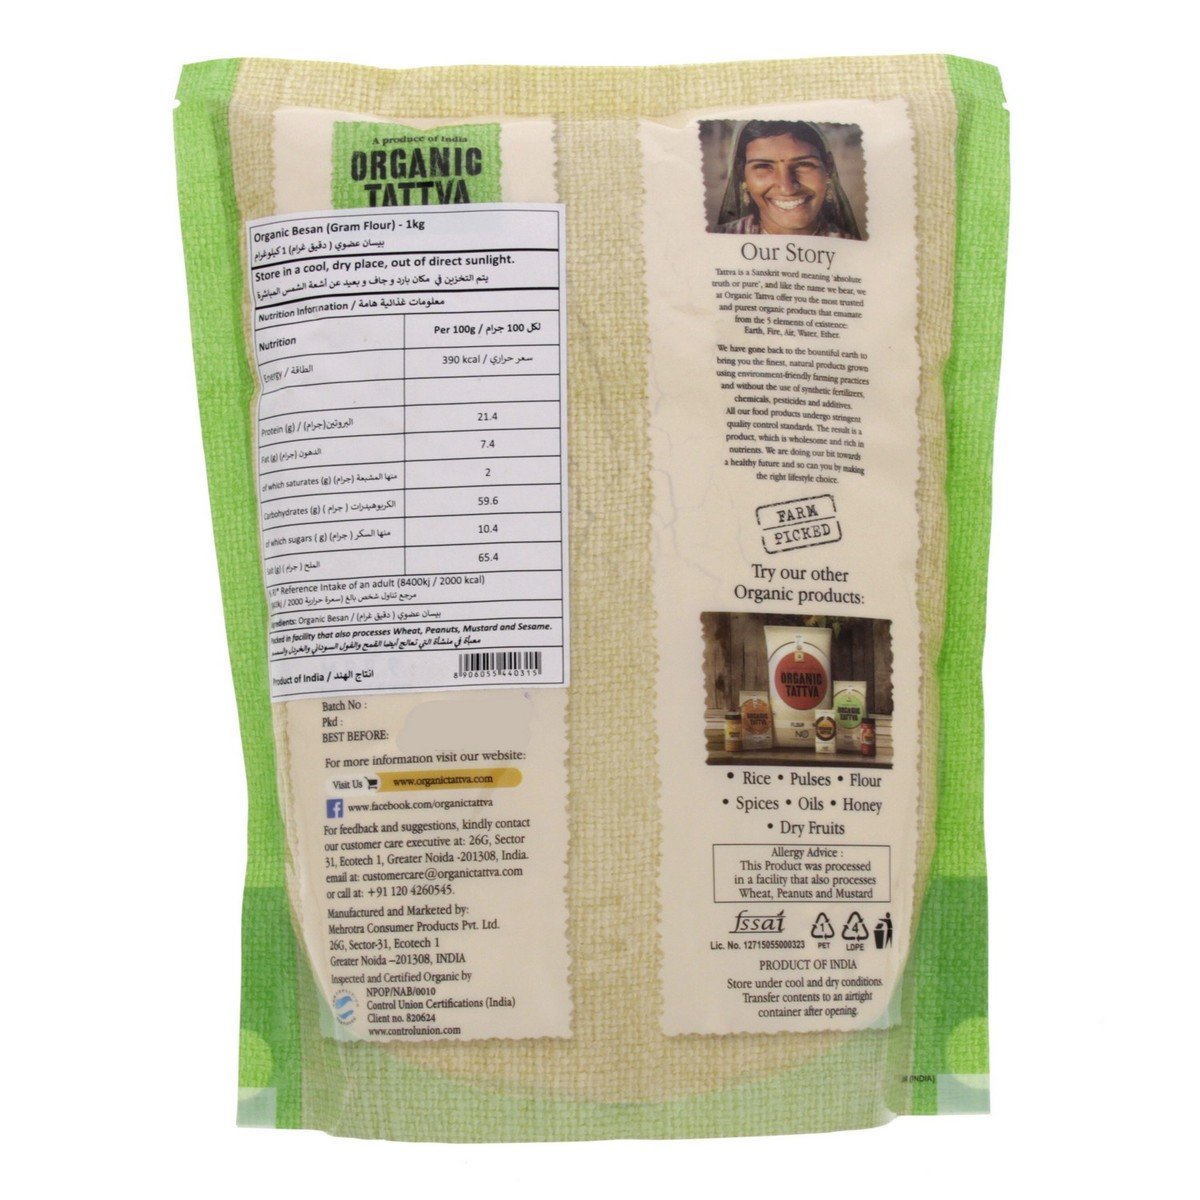 Organic Tattva Organic Besan (Gram Flour) 1 kg